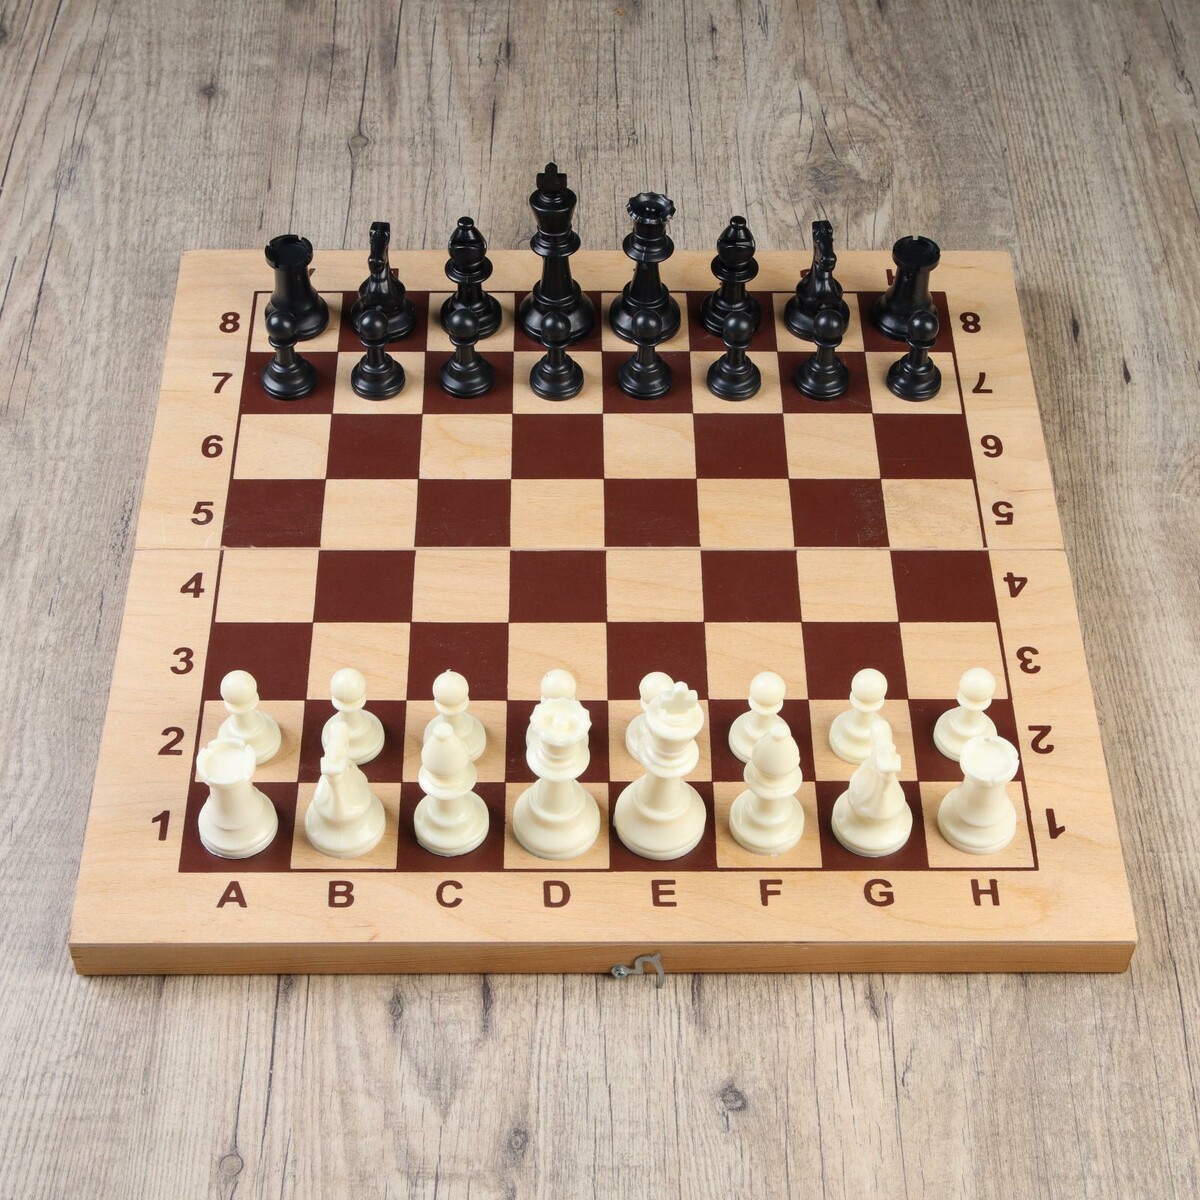 Шахматные фигуры, пластик, король h-9.5 см, пешка h-4.5 см письма скорпиона проходная пешка